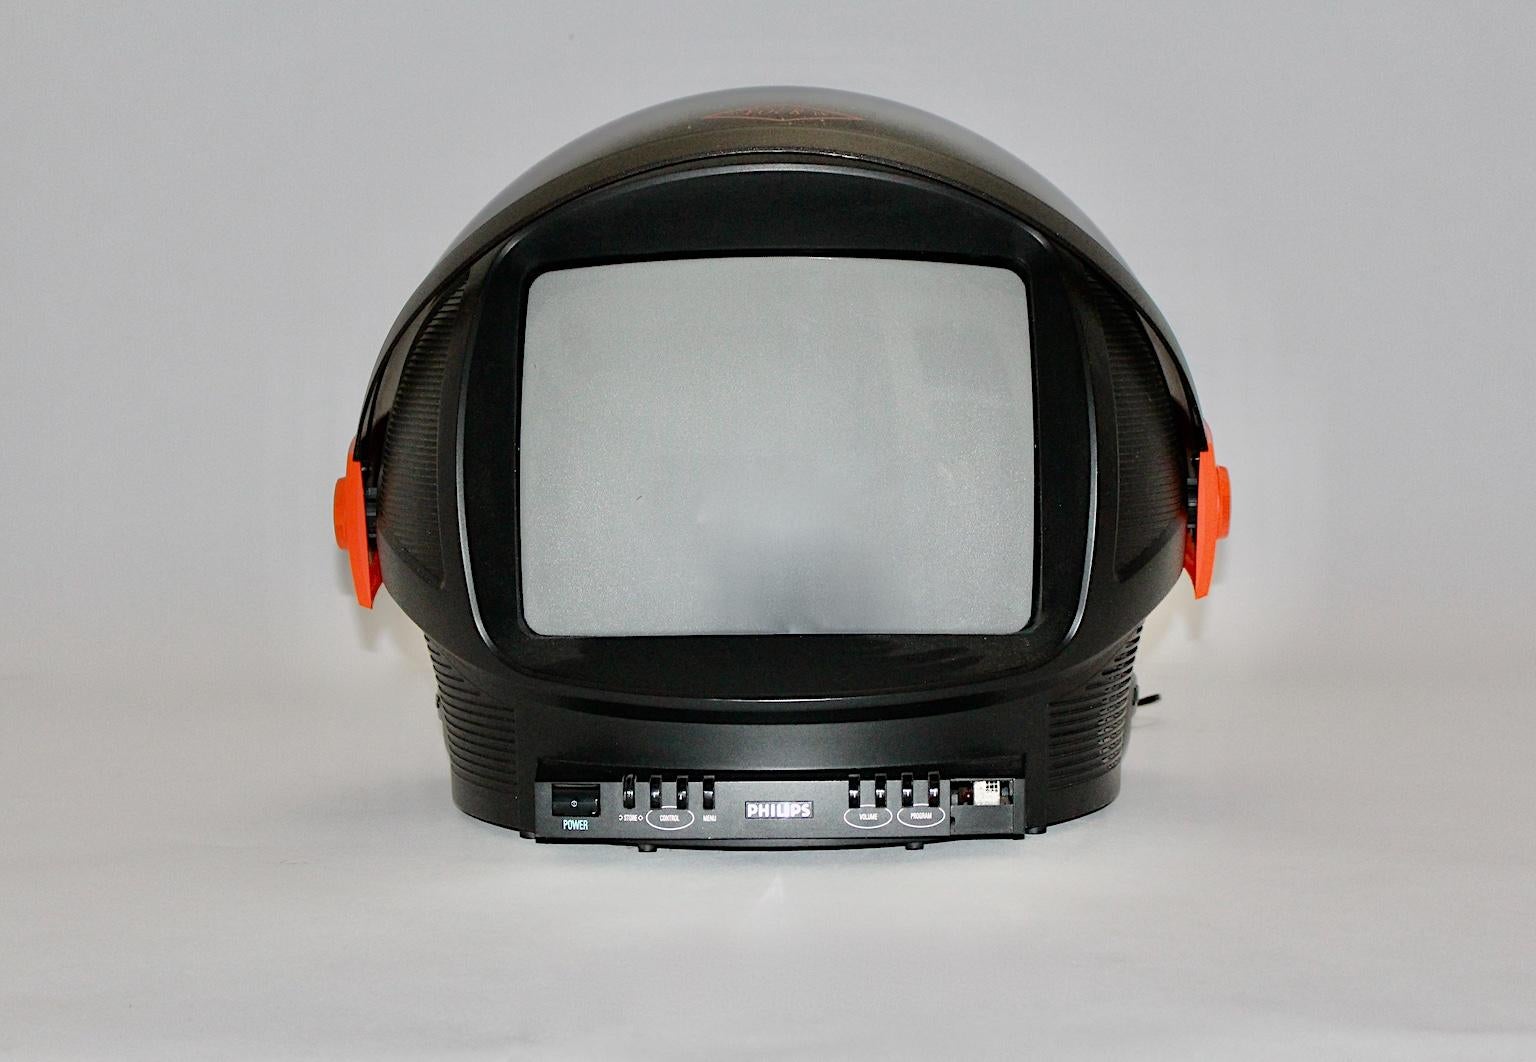 philips space helmet tv